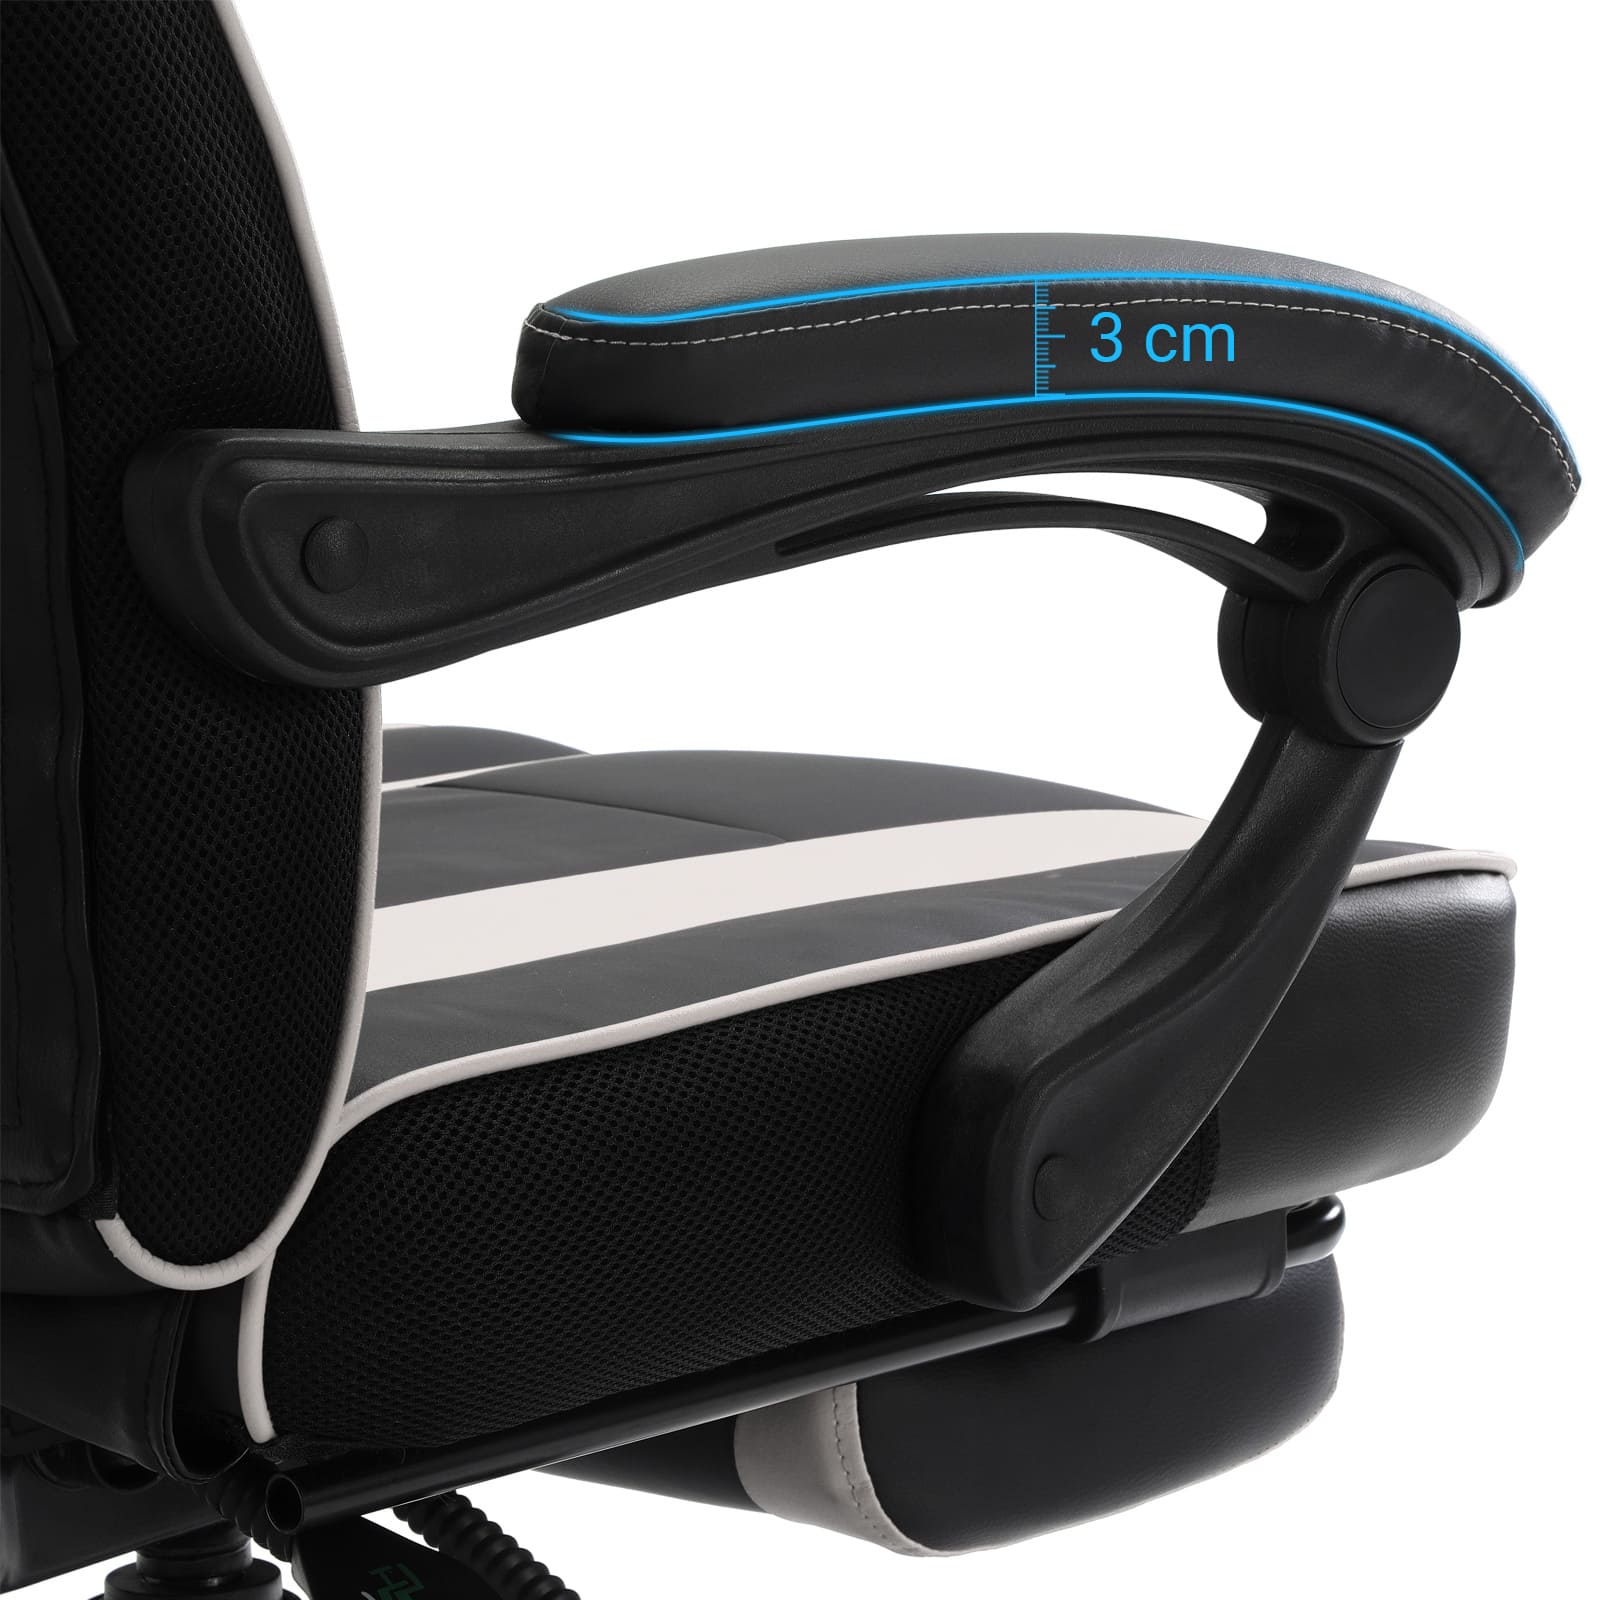 Chaise ergonomique en similicuir PU, facile à nettoyer, Accoudoir souple - 3 cm